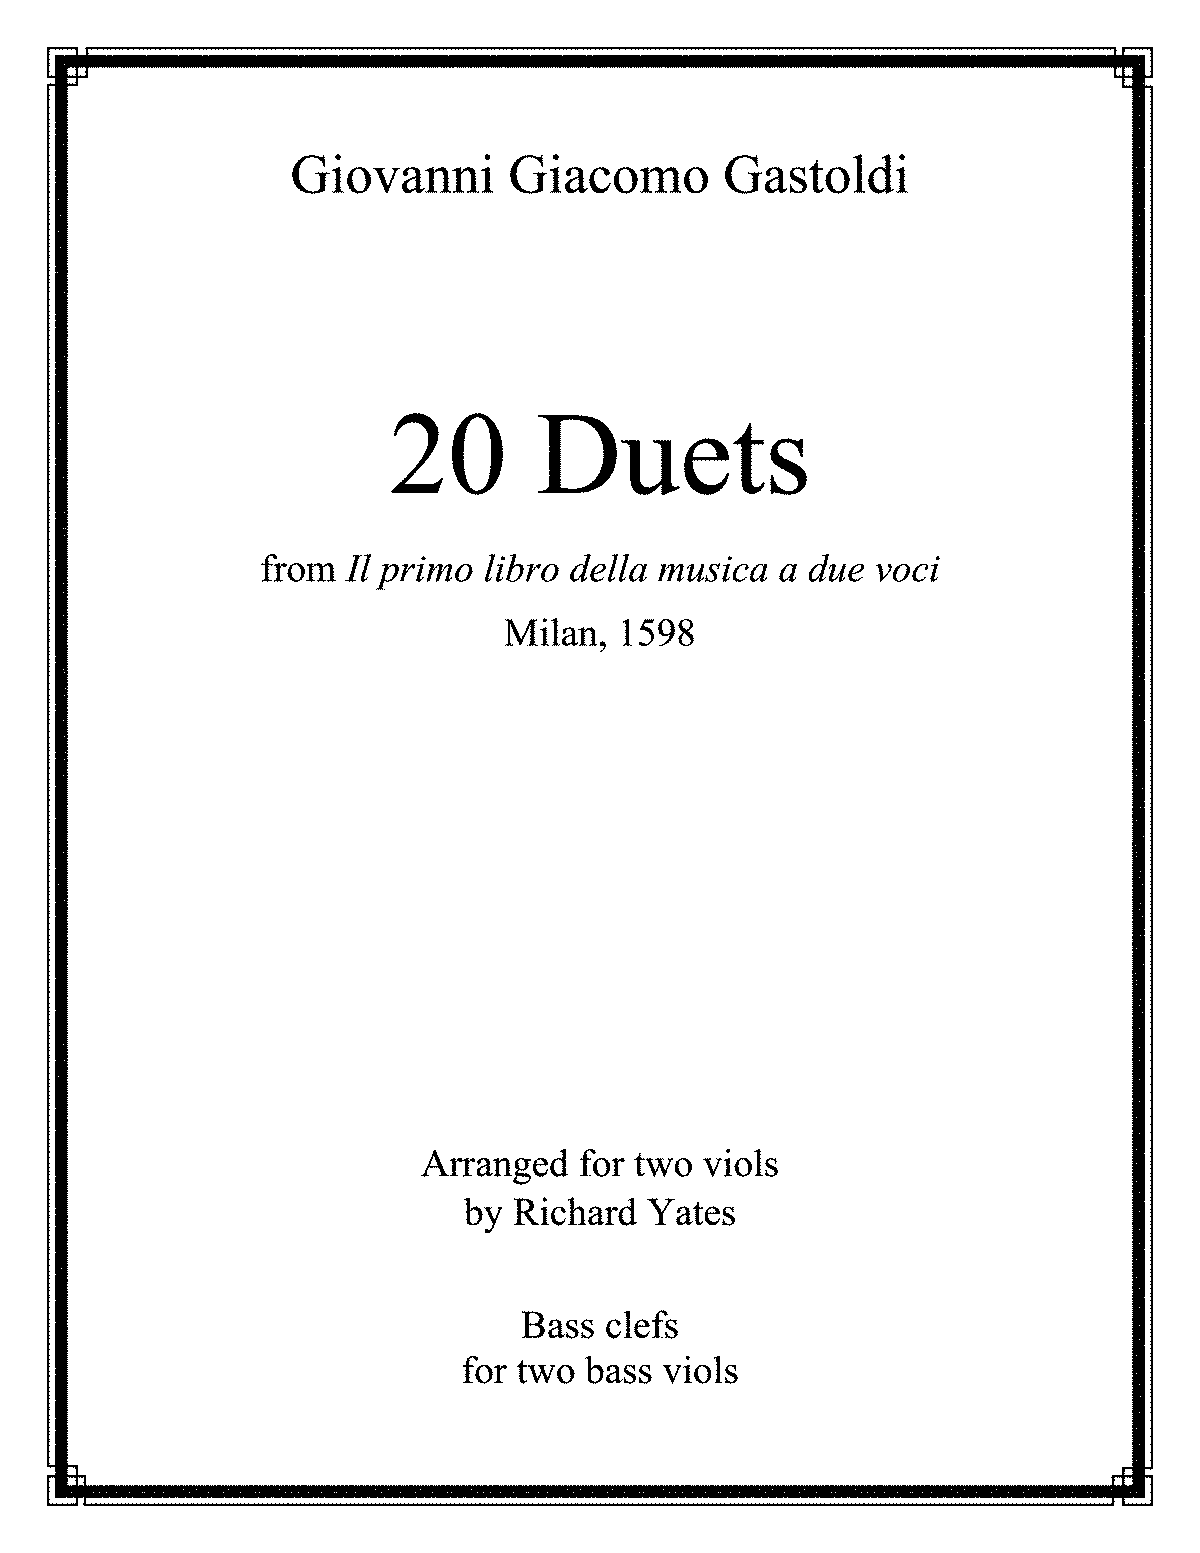 Il primo libro della musica a due voci (Gastoldi, Giovanni Giacomo) - IMSLP